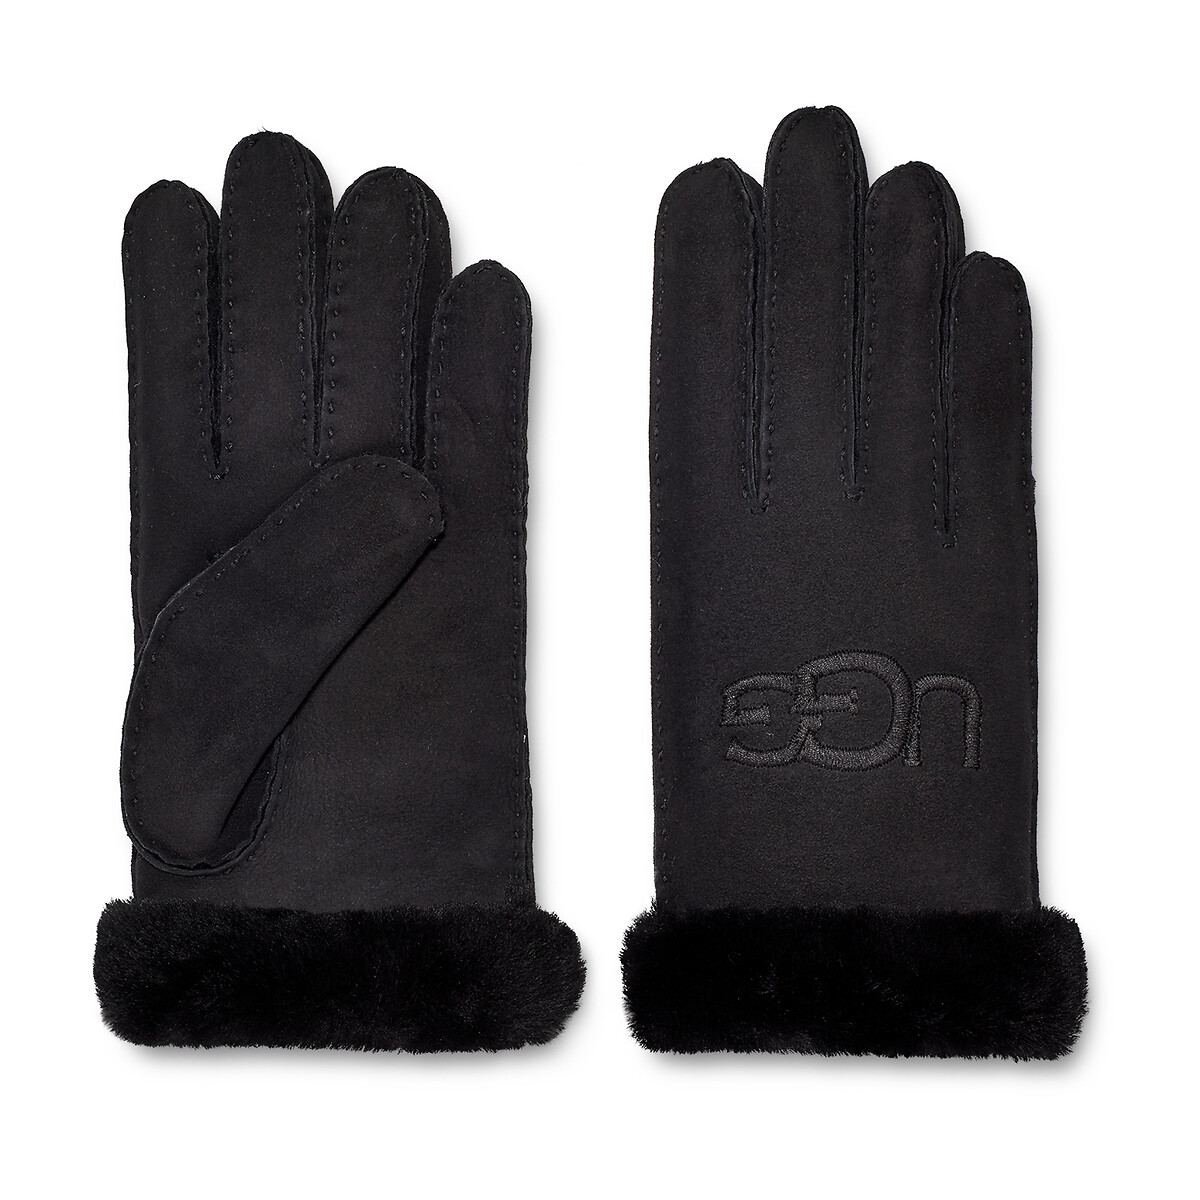 Emigreren Minachting toetje Handschoenen w shearling embroider glove zwart Ugg | La Redoute